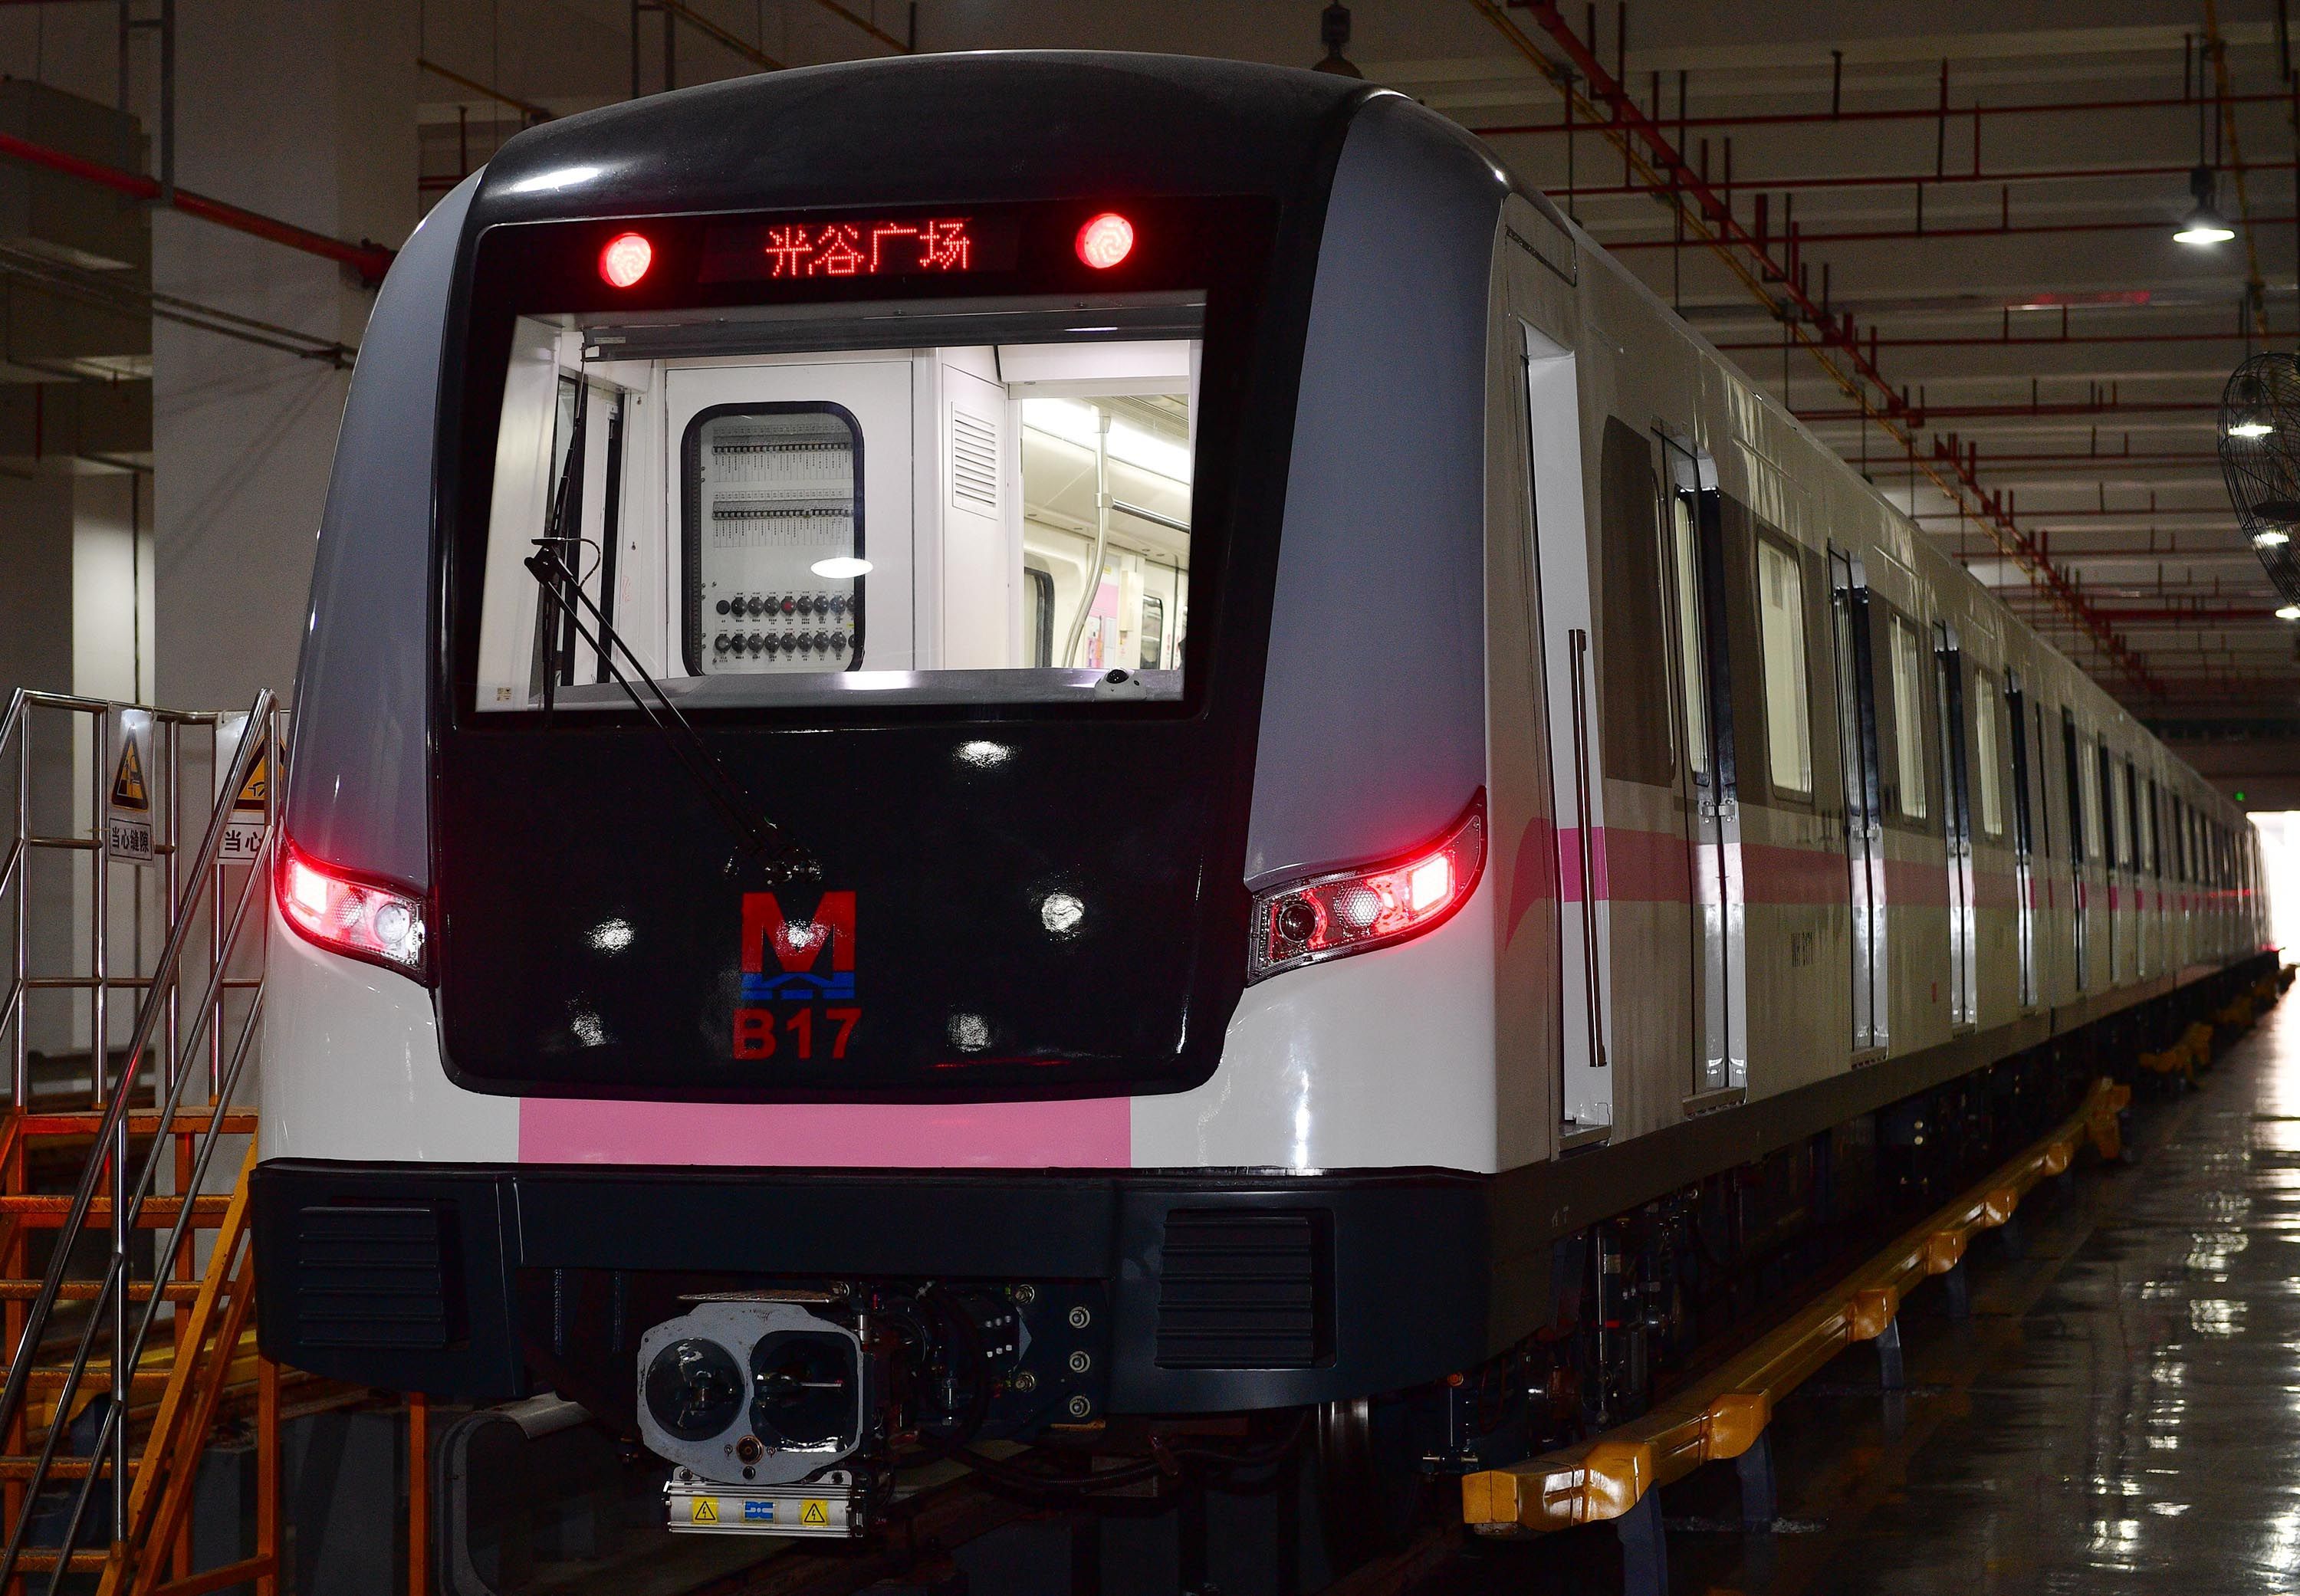 直击现场武汉地铁2号线第一列车完成大修内外焕然一新